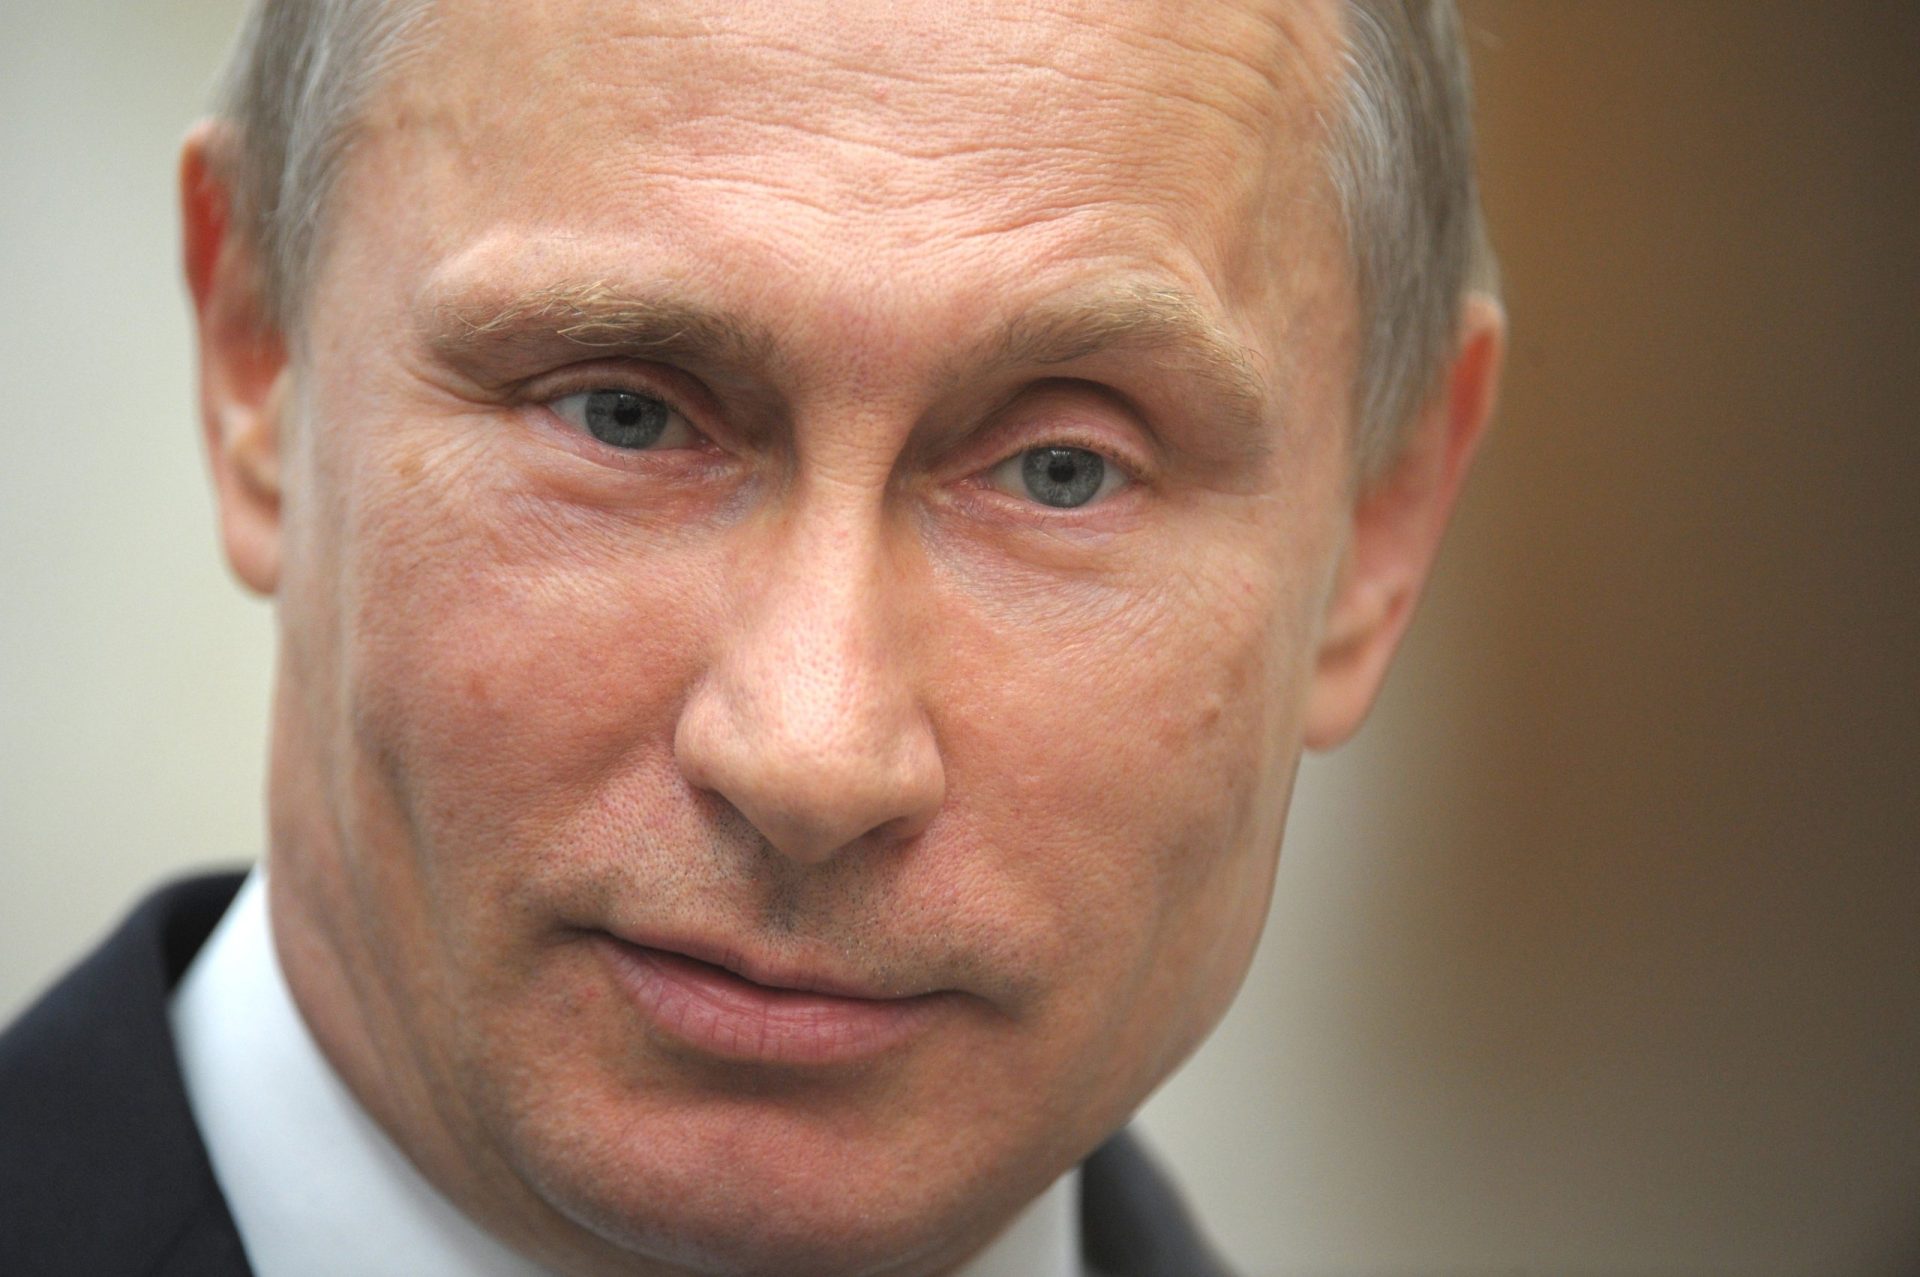 Rússia responde a sanções económicas com restrição a importações